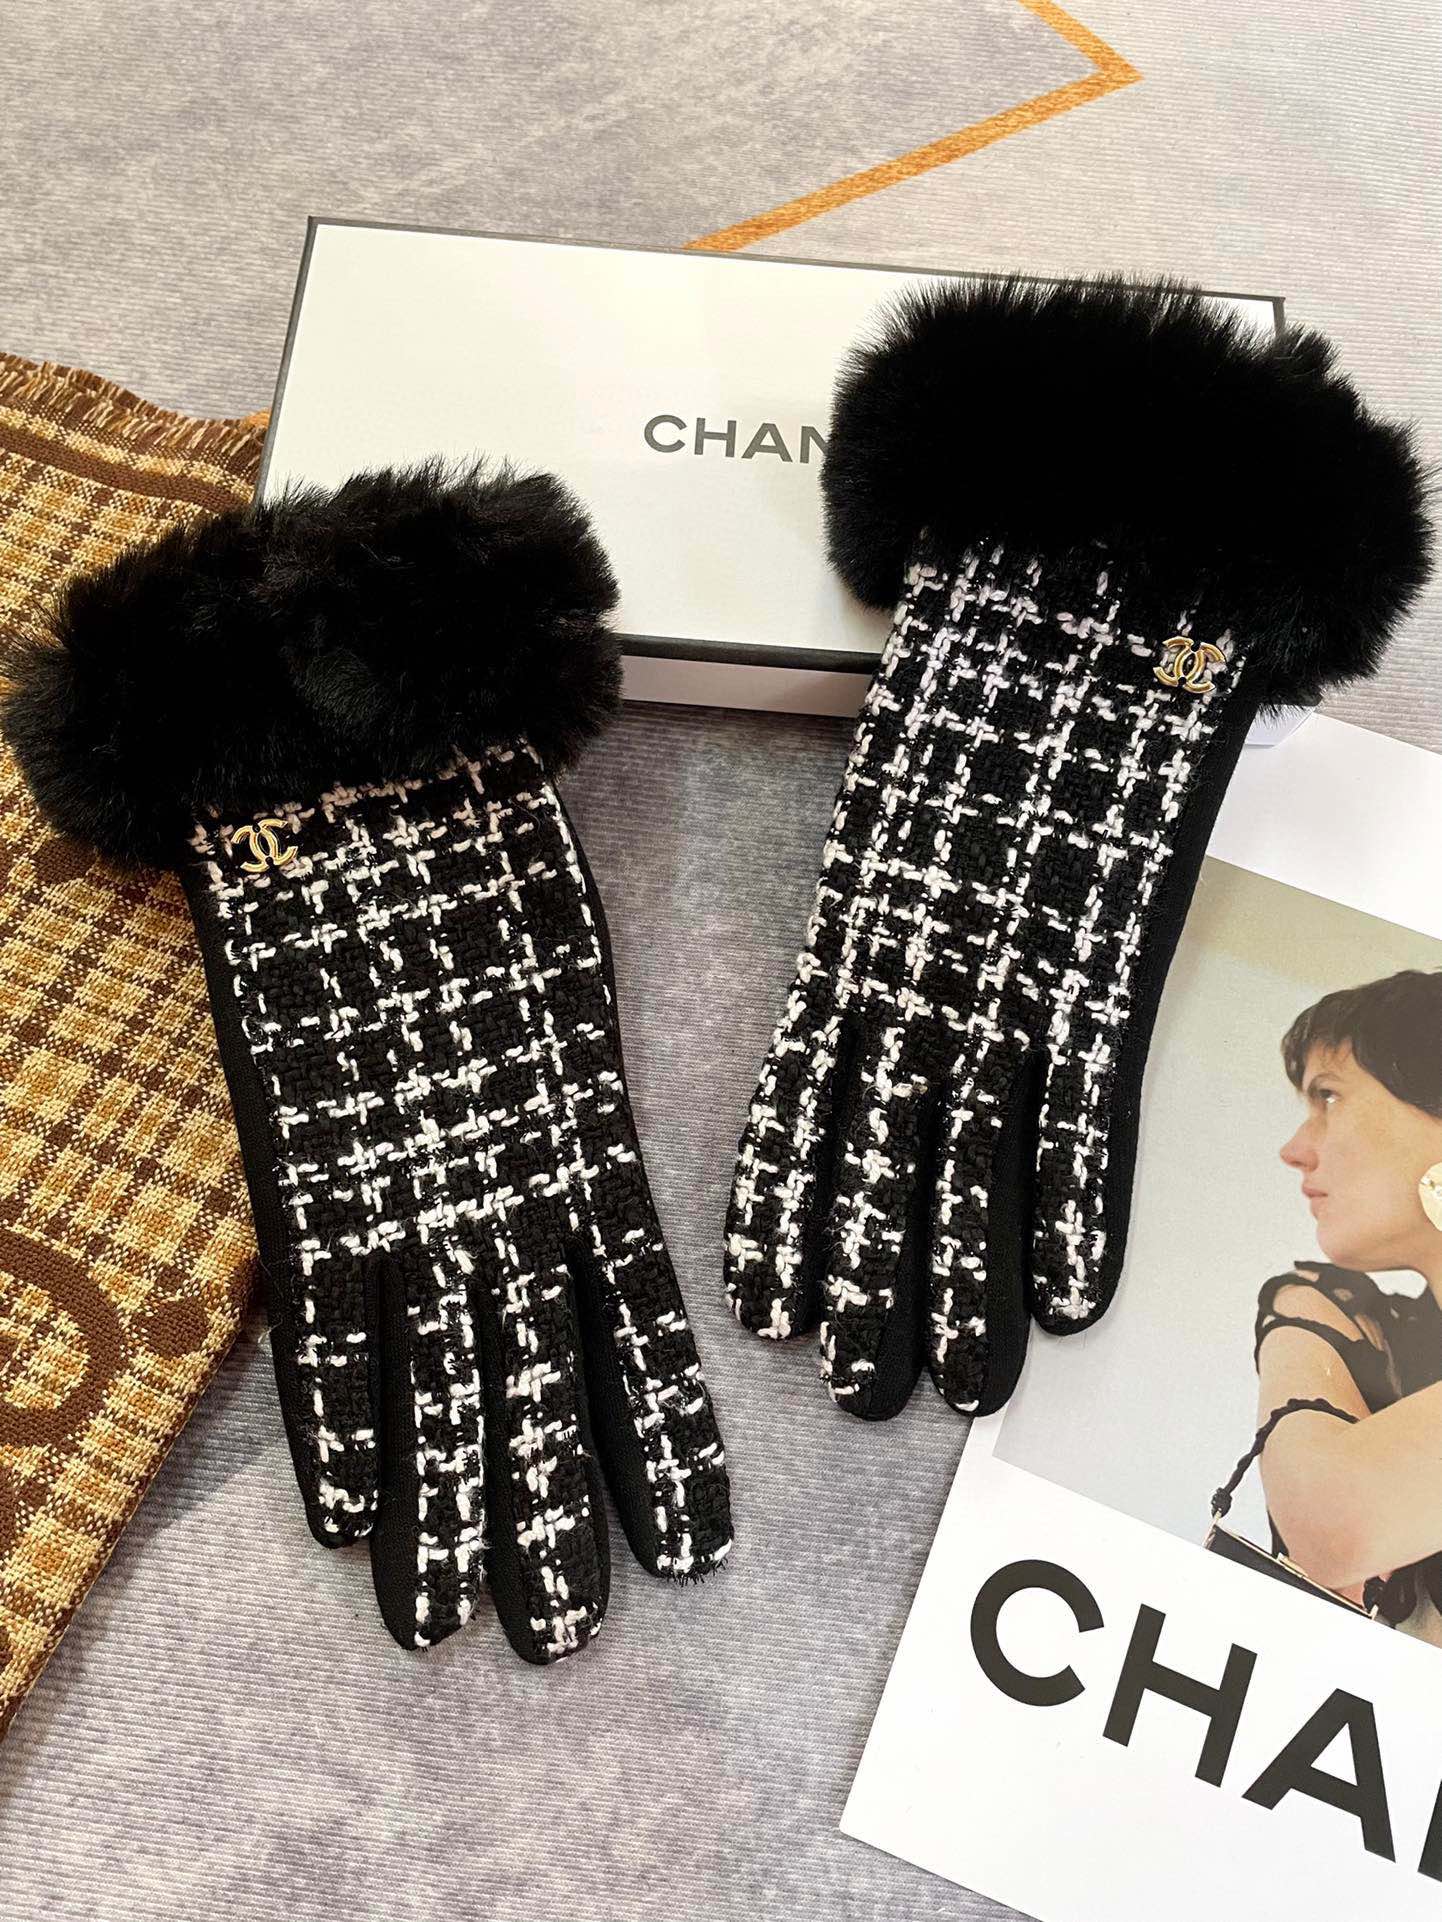 Chanel香奈儿新款水貂绒配羊毛手套手感更软细糯腻亲肤保性暖更好天然染料低温染色呈最现纯粹浓郁饱的满颜